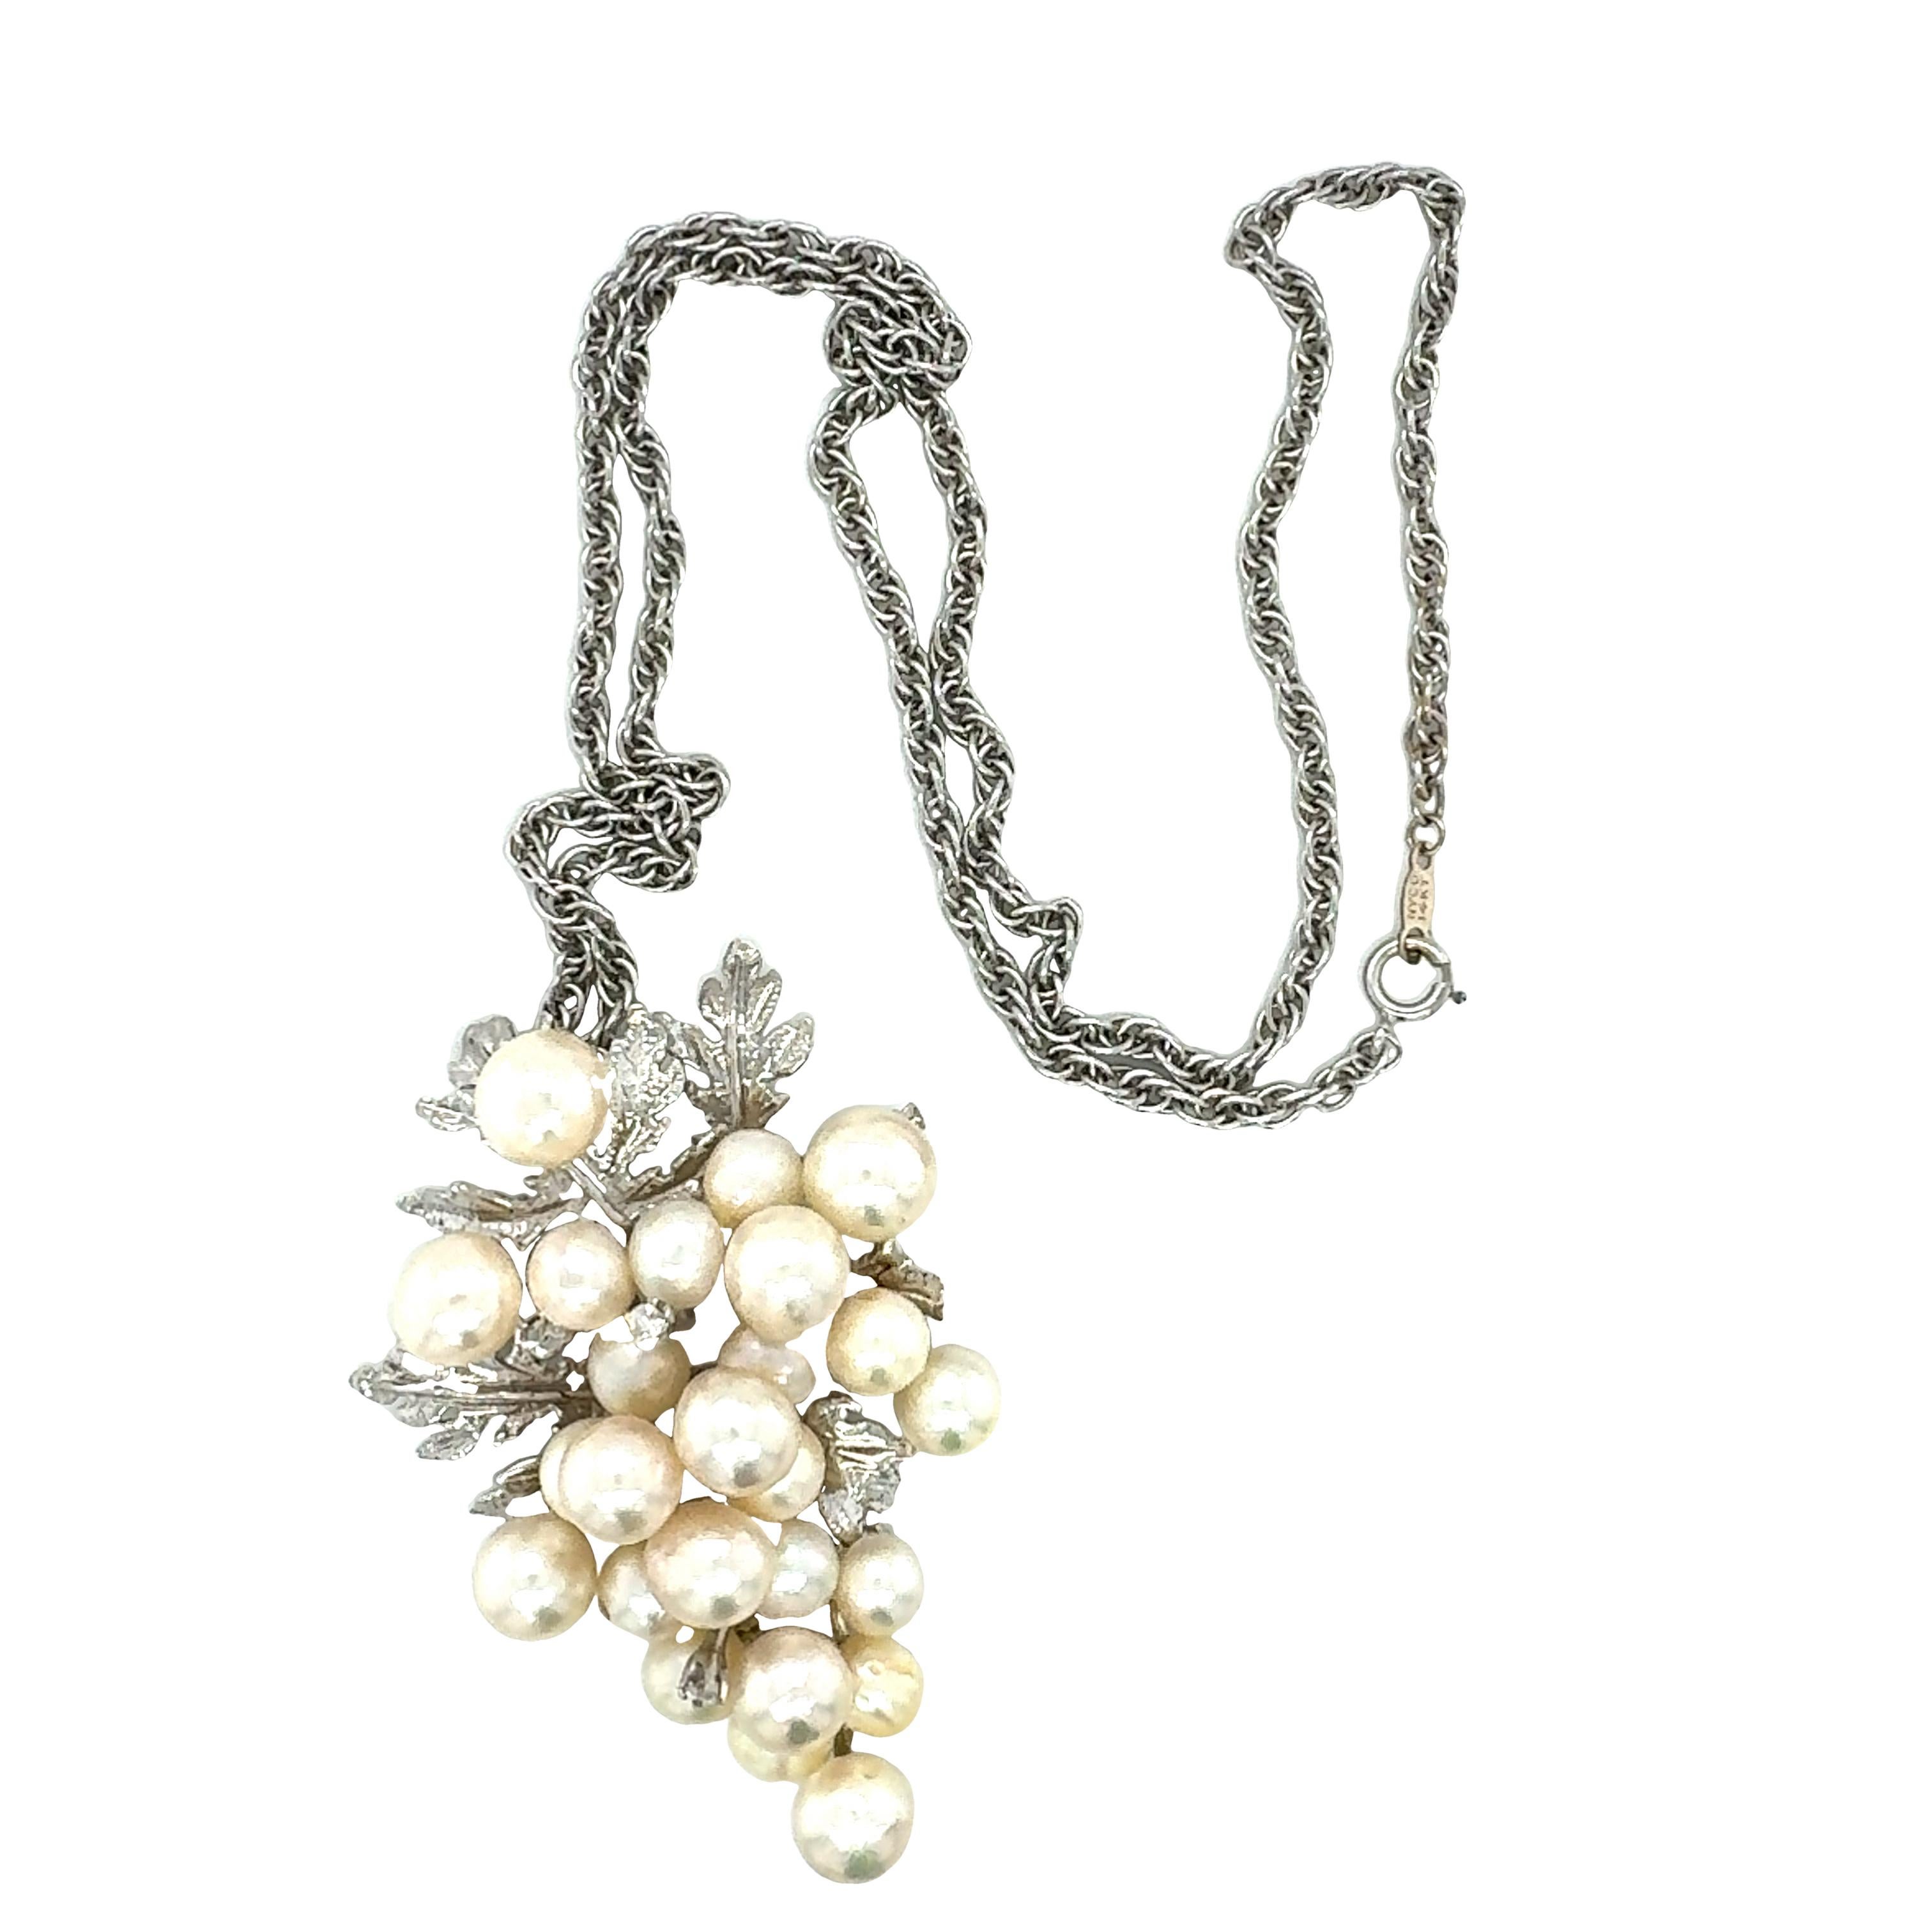 Un pendentif grappe de perles en or blanc 14 carats comprenant 25 perles de culture blanches rondes mesurant de 6,00 à 8,00 millimètres de diamètre. Accentué par deux diamants ronds de taille brillante sertis à l'emporte-pièce totalisant 0,06 ct. de